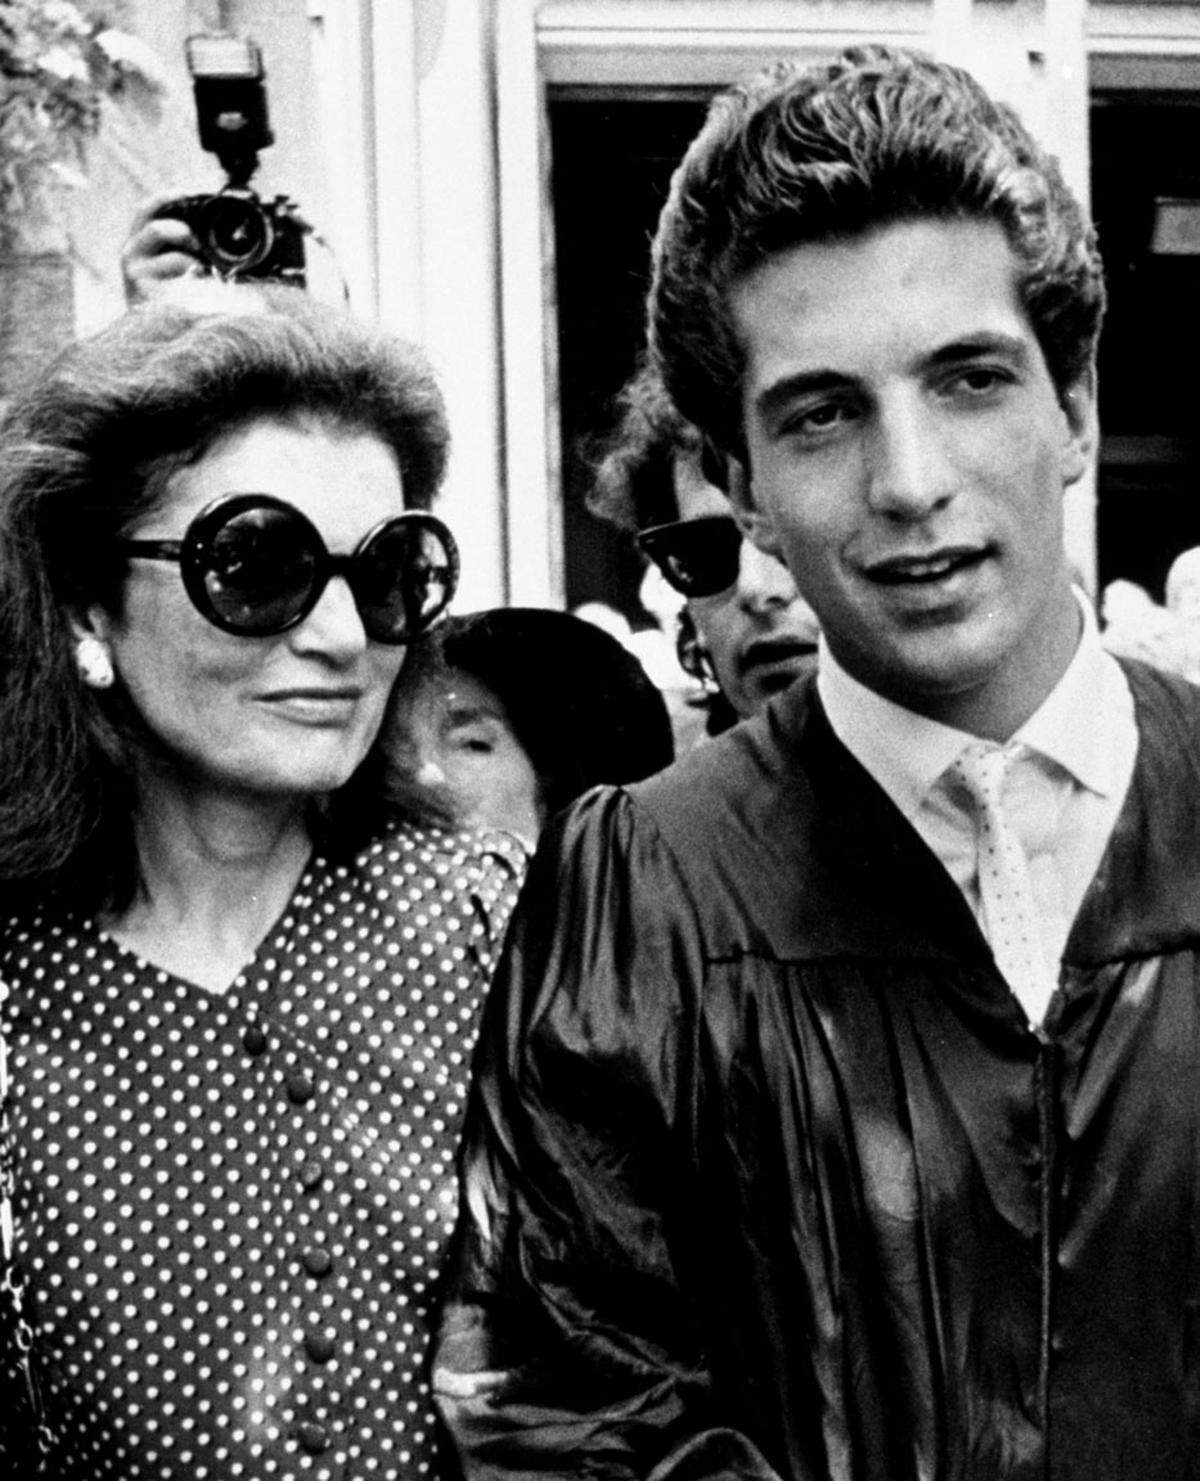 Einmal kein Schauspieler: John F. Kennedy jr. (im Bild mit seiner Mutter Jacky) führte 1988 die Liste der "Sexiest Man Alive" an.